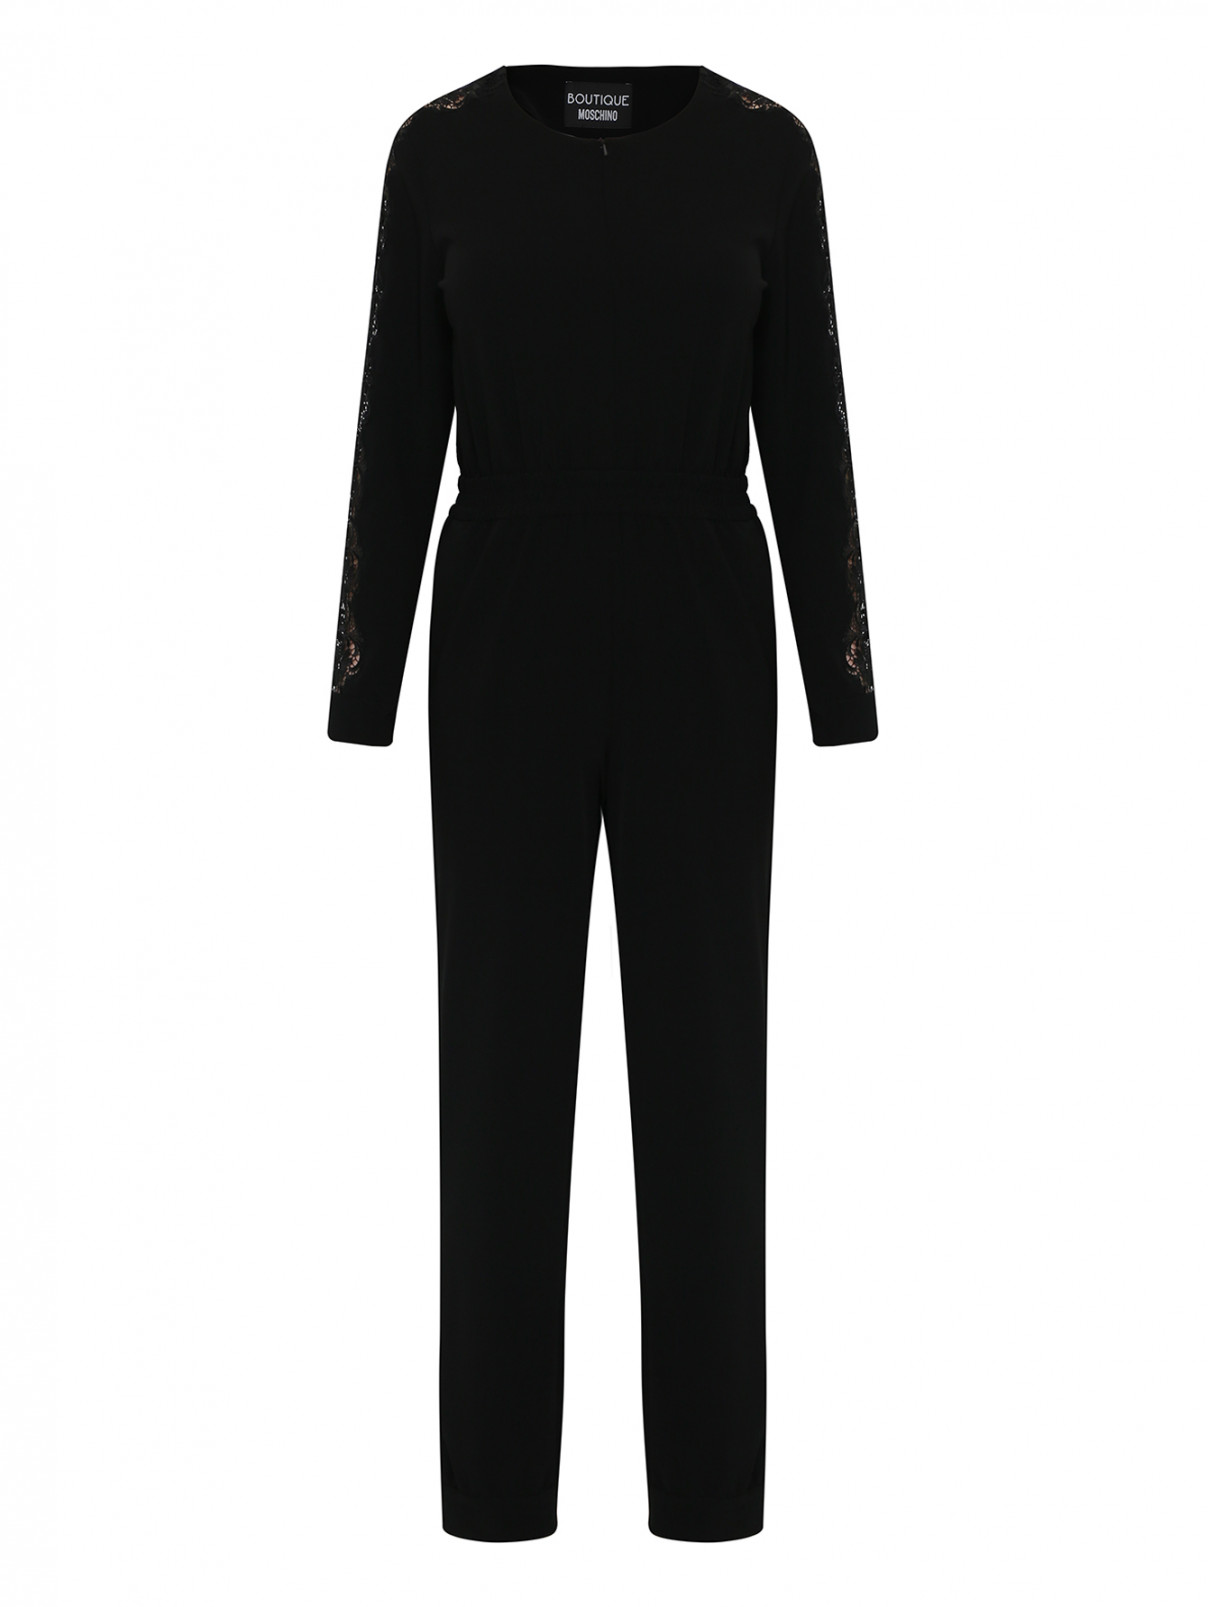 Комбинезон с кружевной отделкой на рукавах Moschino Boutique  –  Общий вид  – Цвет:  Черный